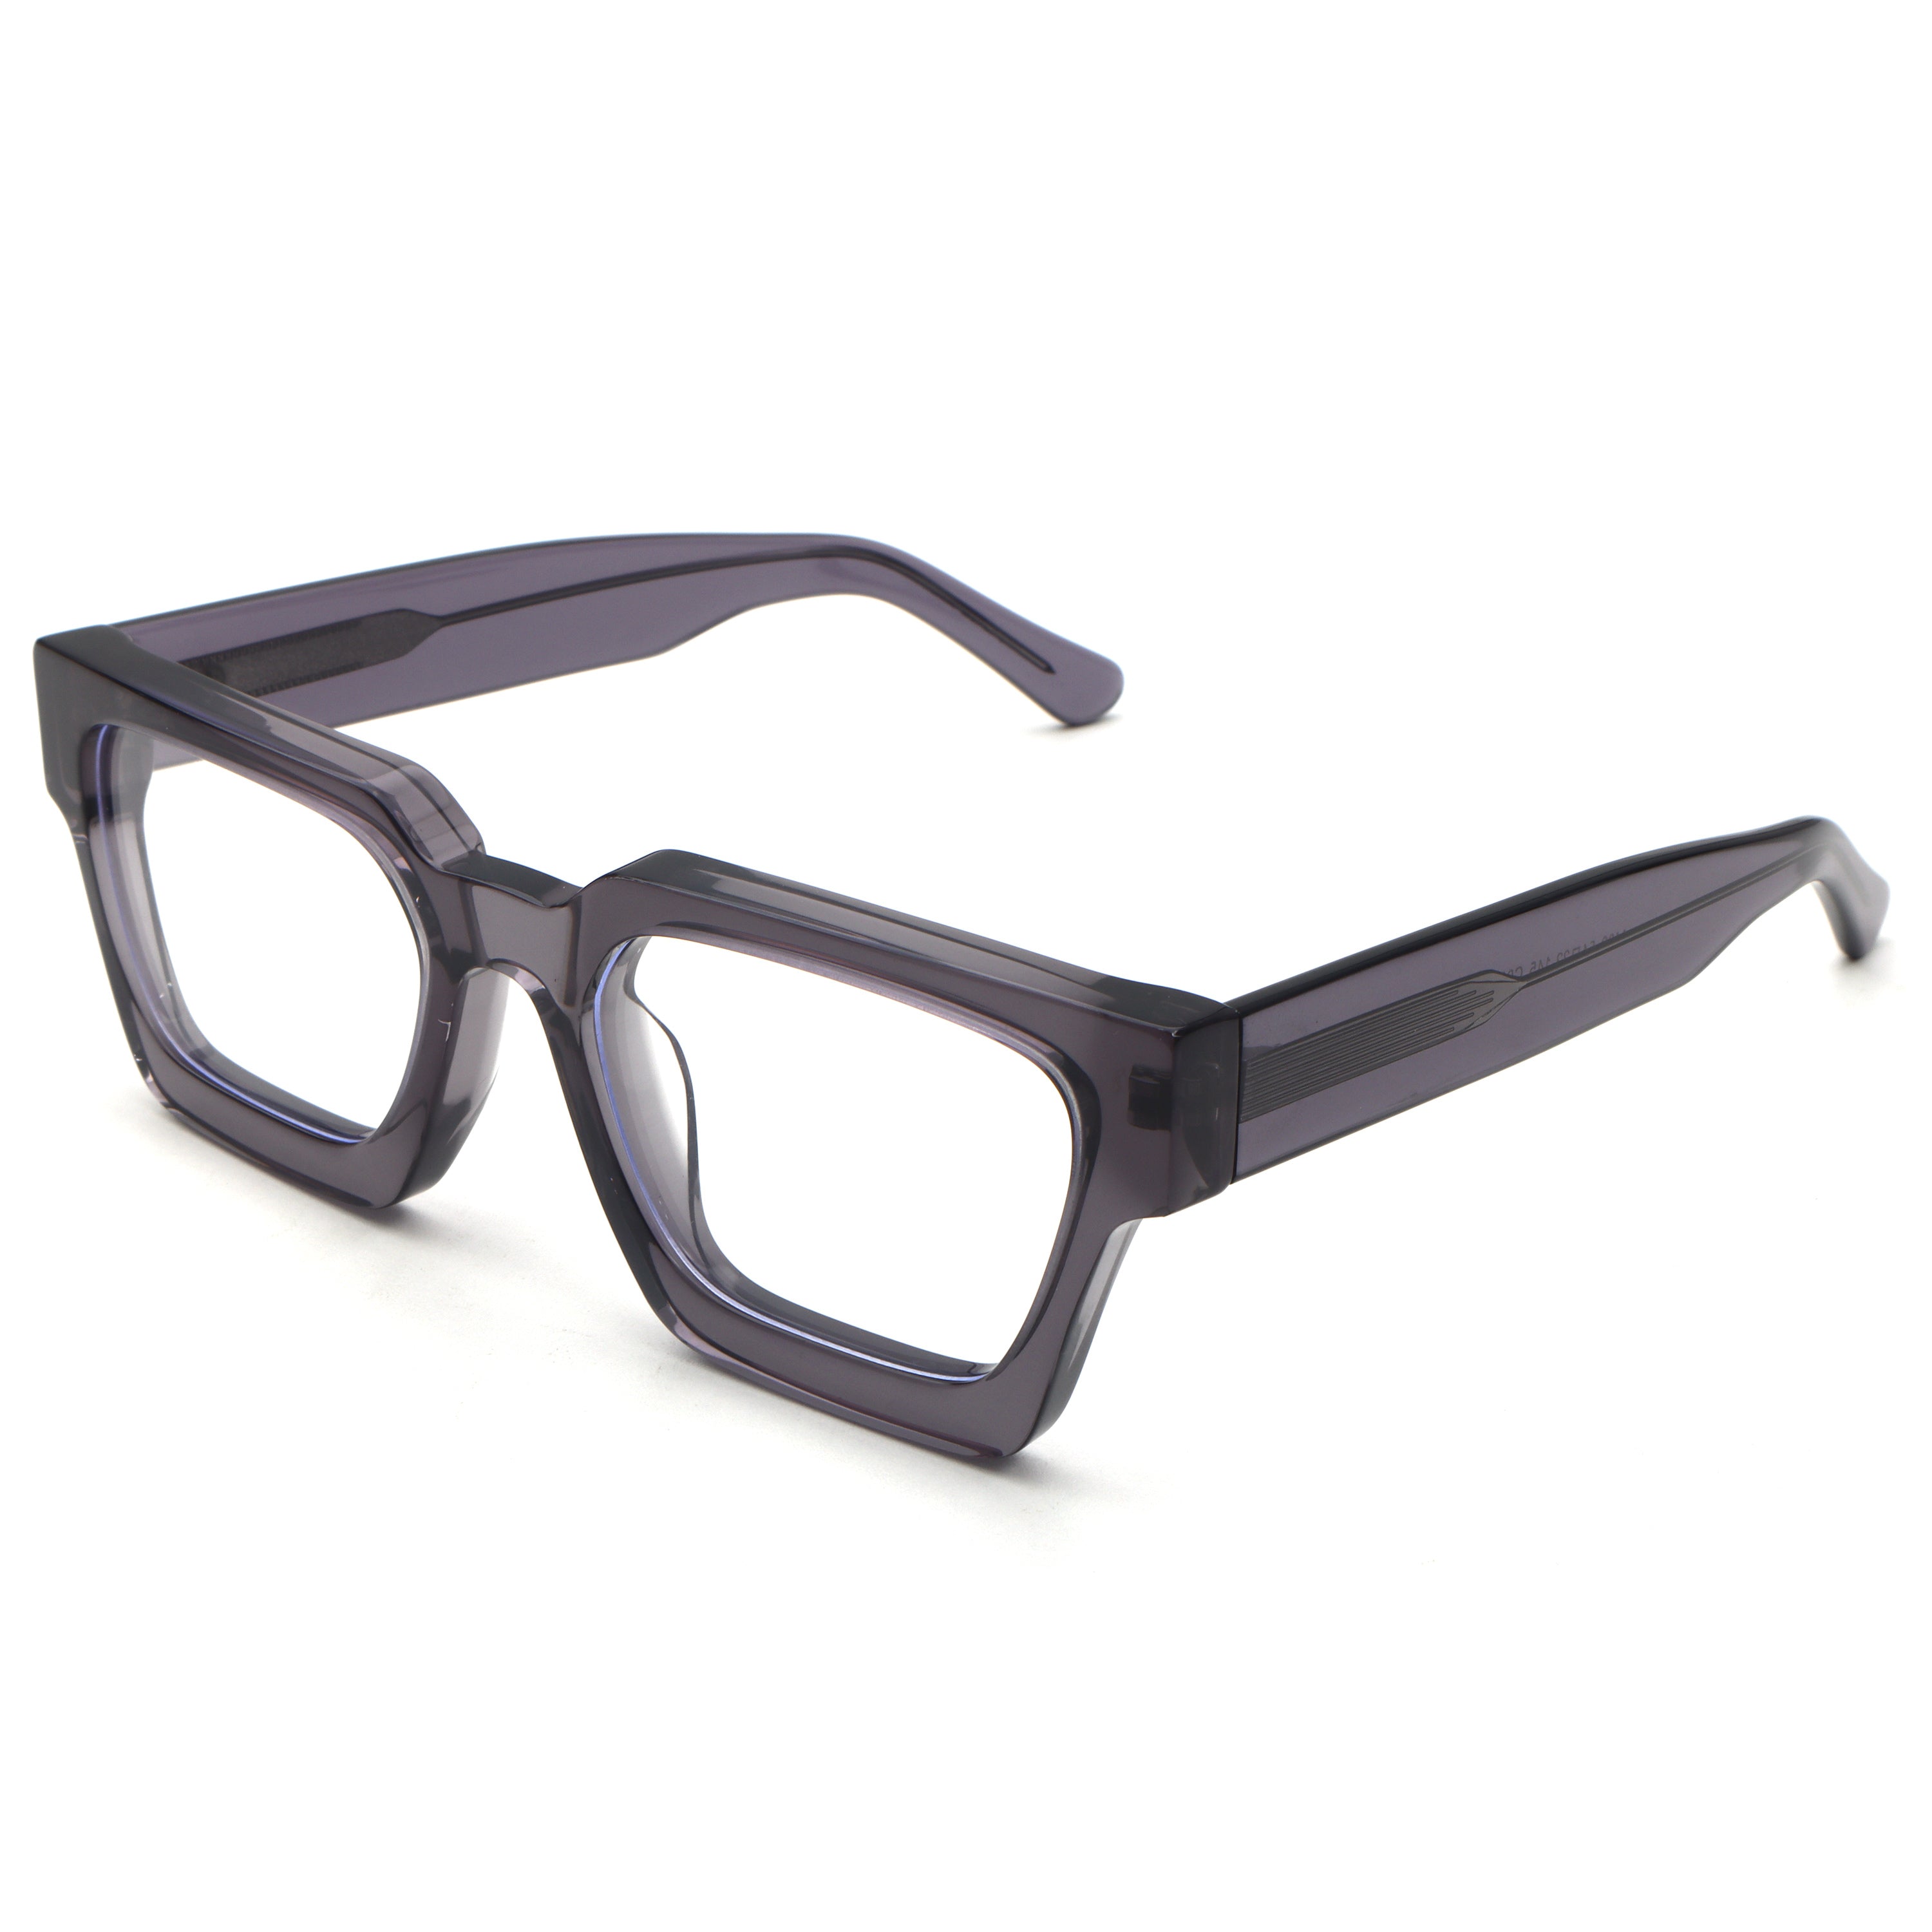 men's square eyeglasses